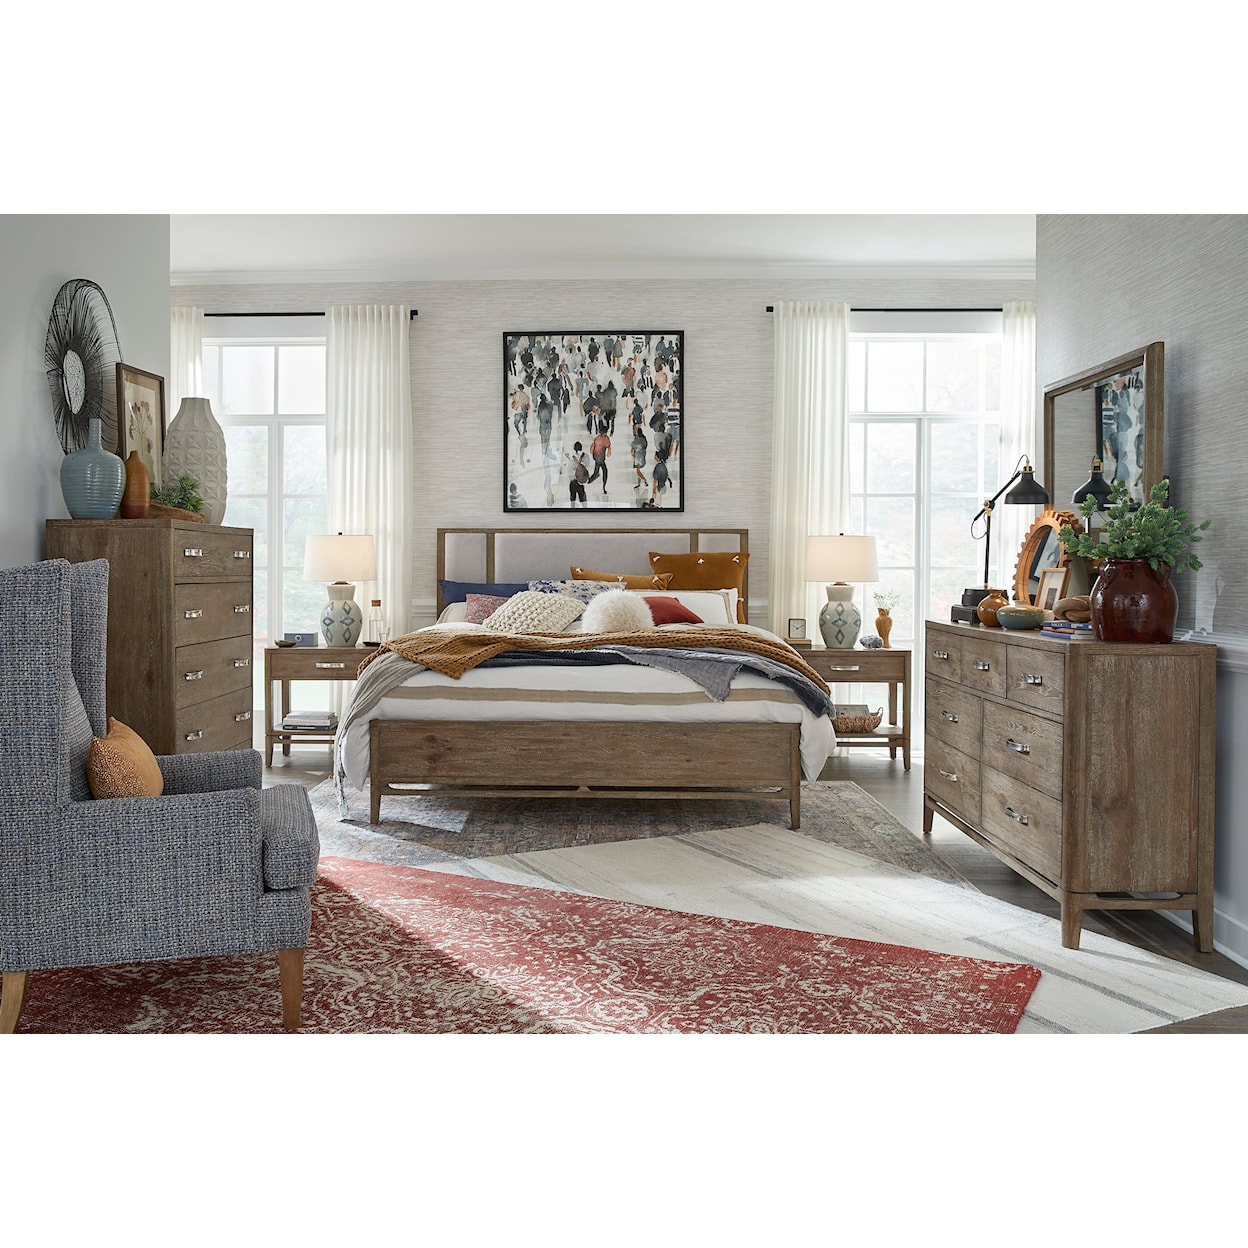 Magnussen Home Kavanaugh Bedroom Upholstered Queen Bedroom Group